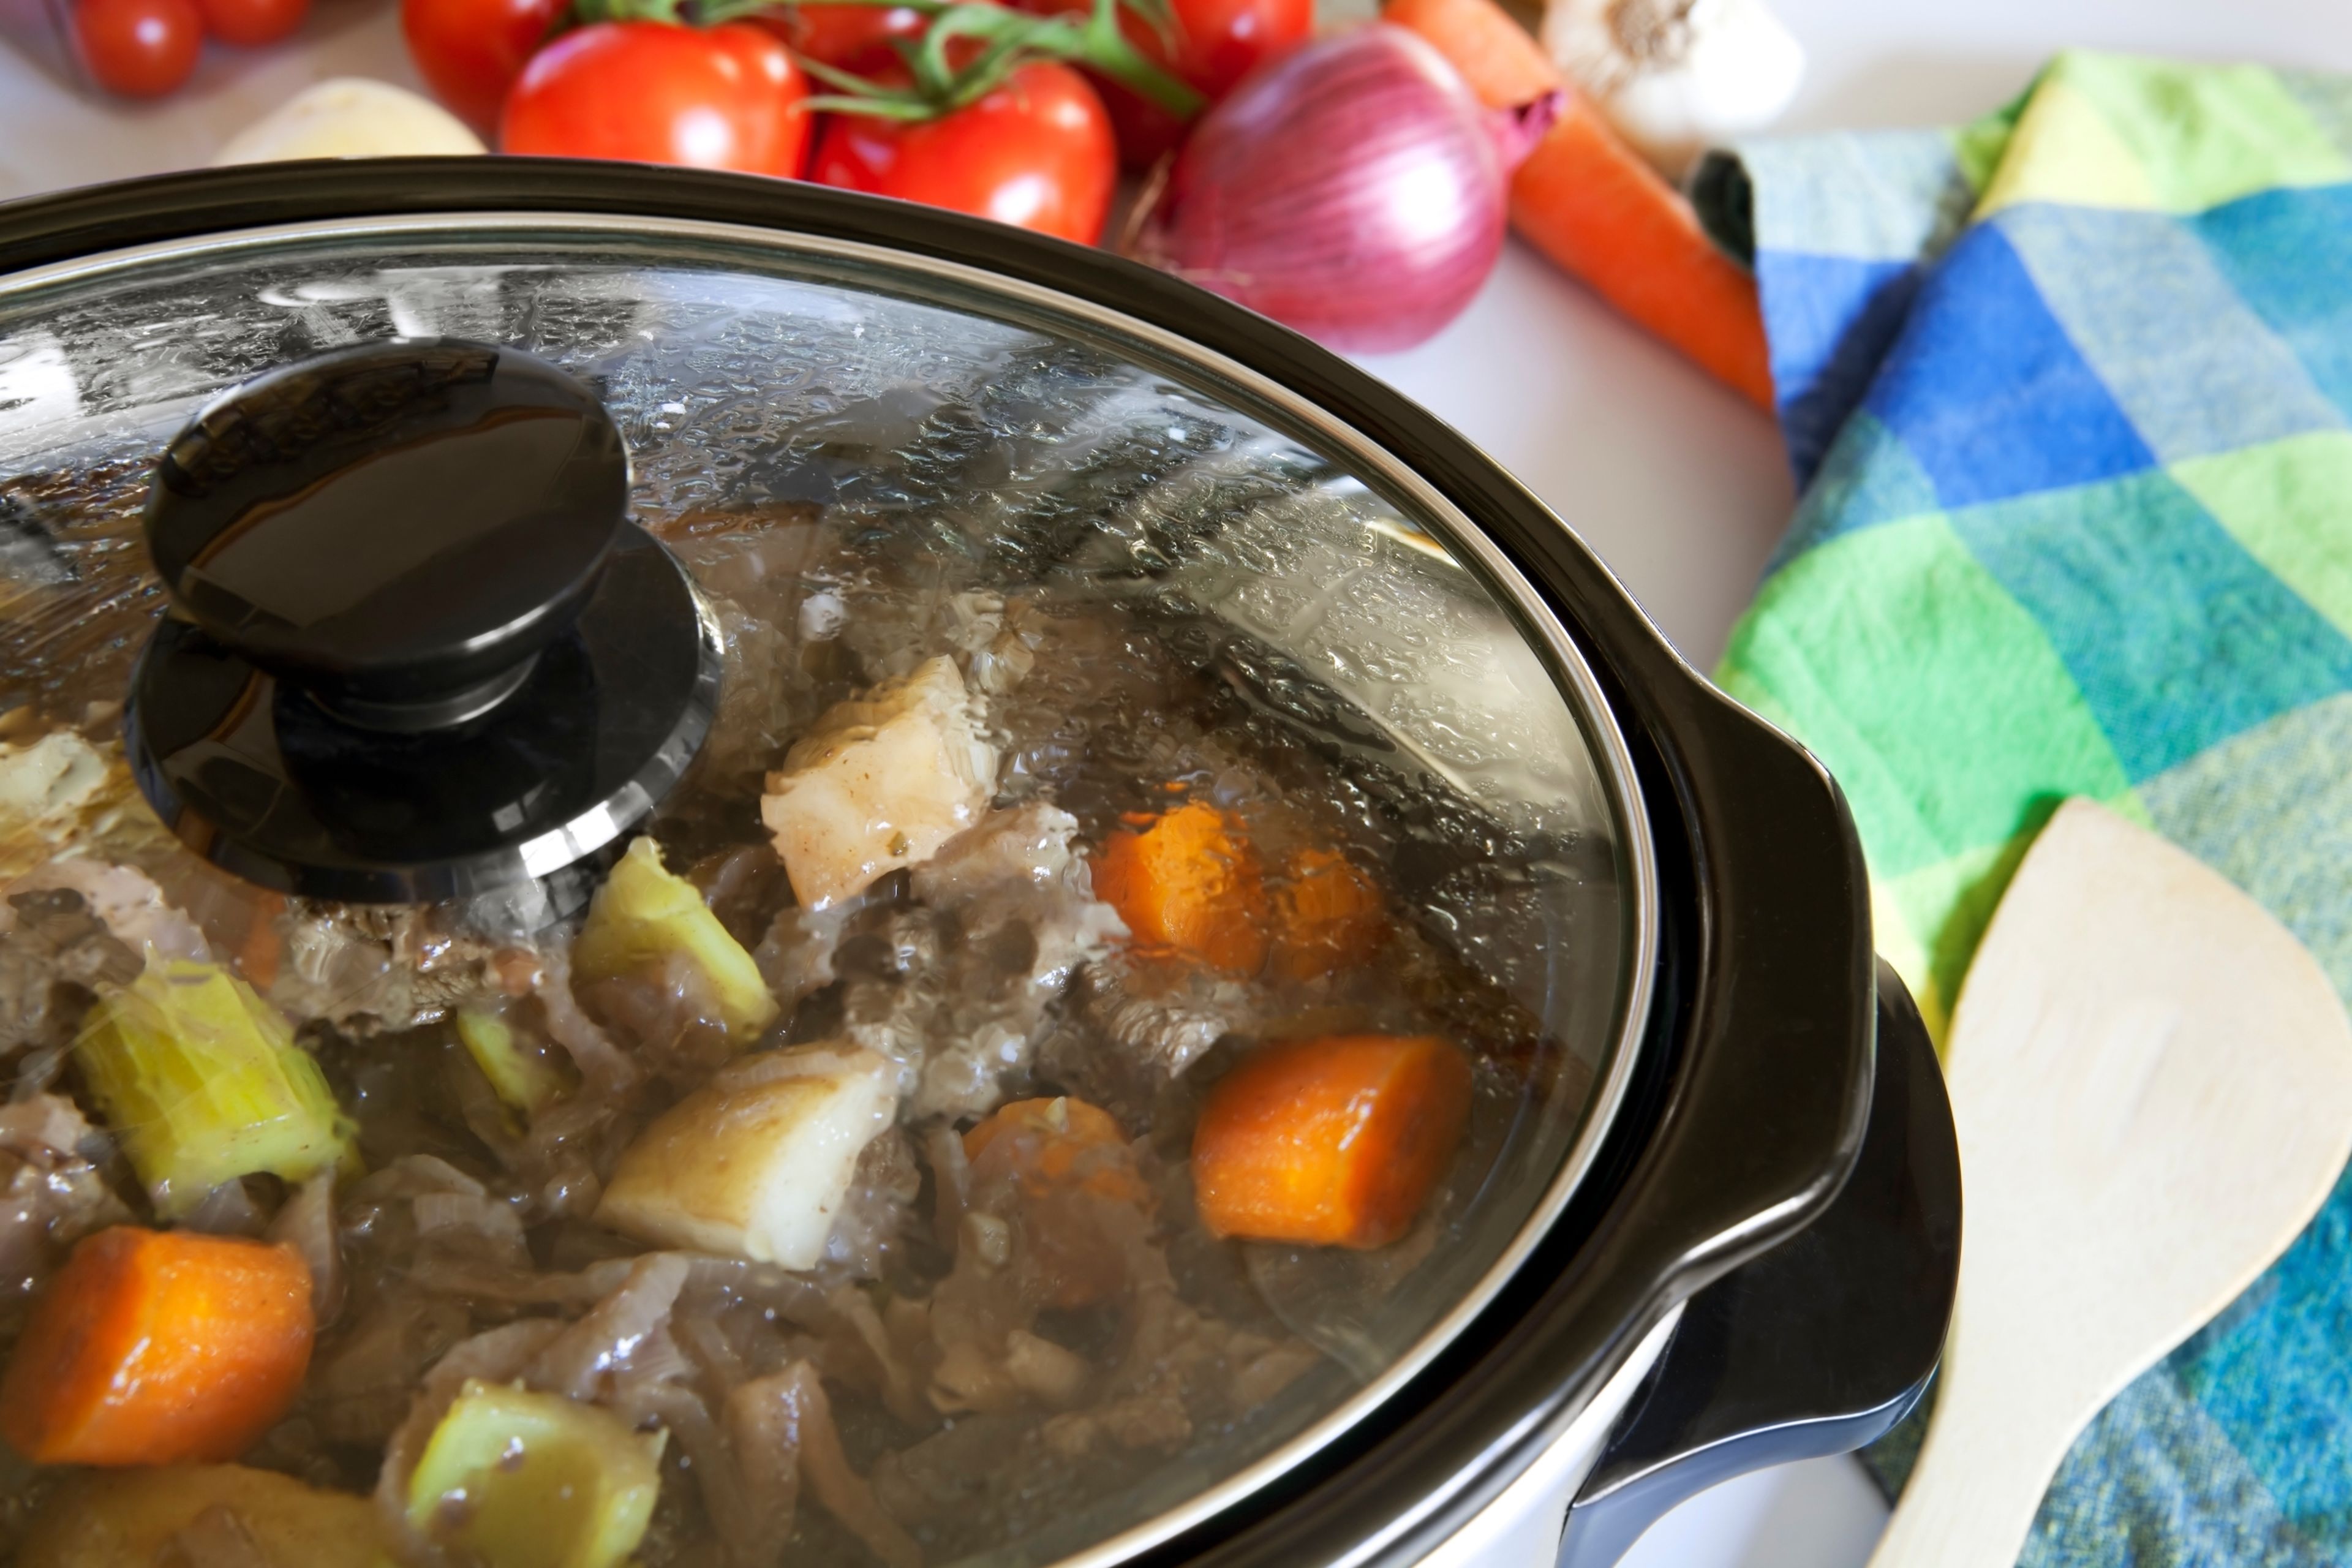 Las mejores ofertas en Acero Inoxidable Crock-Pot cocinas lenta